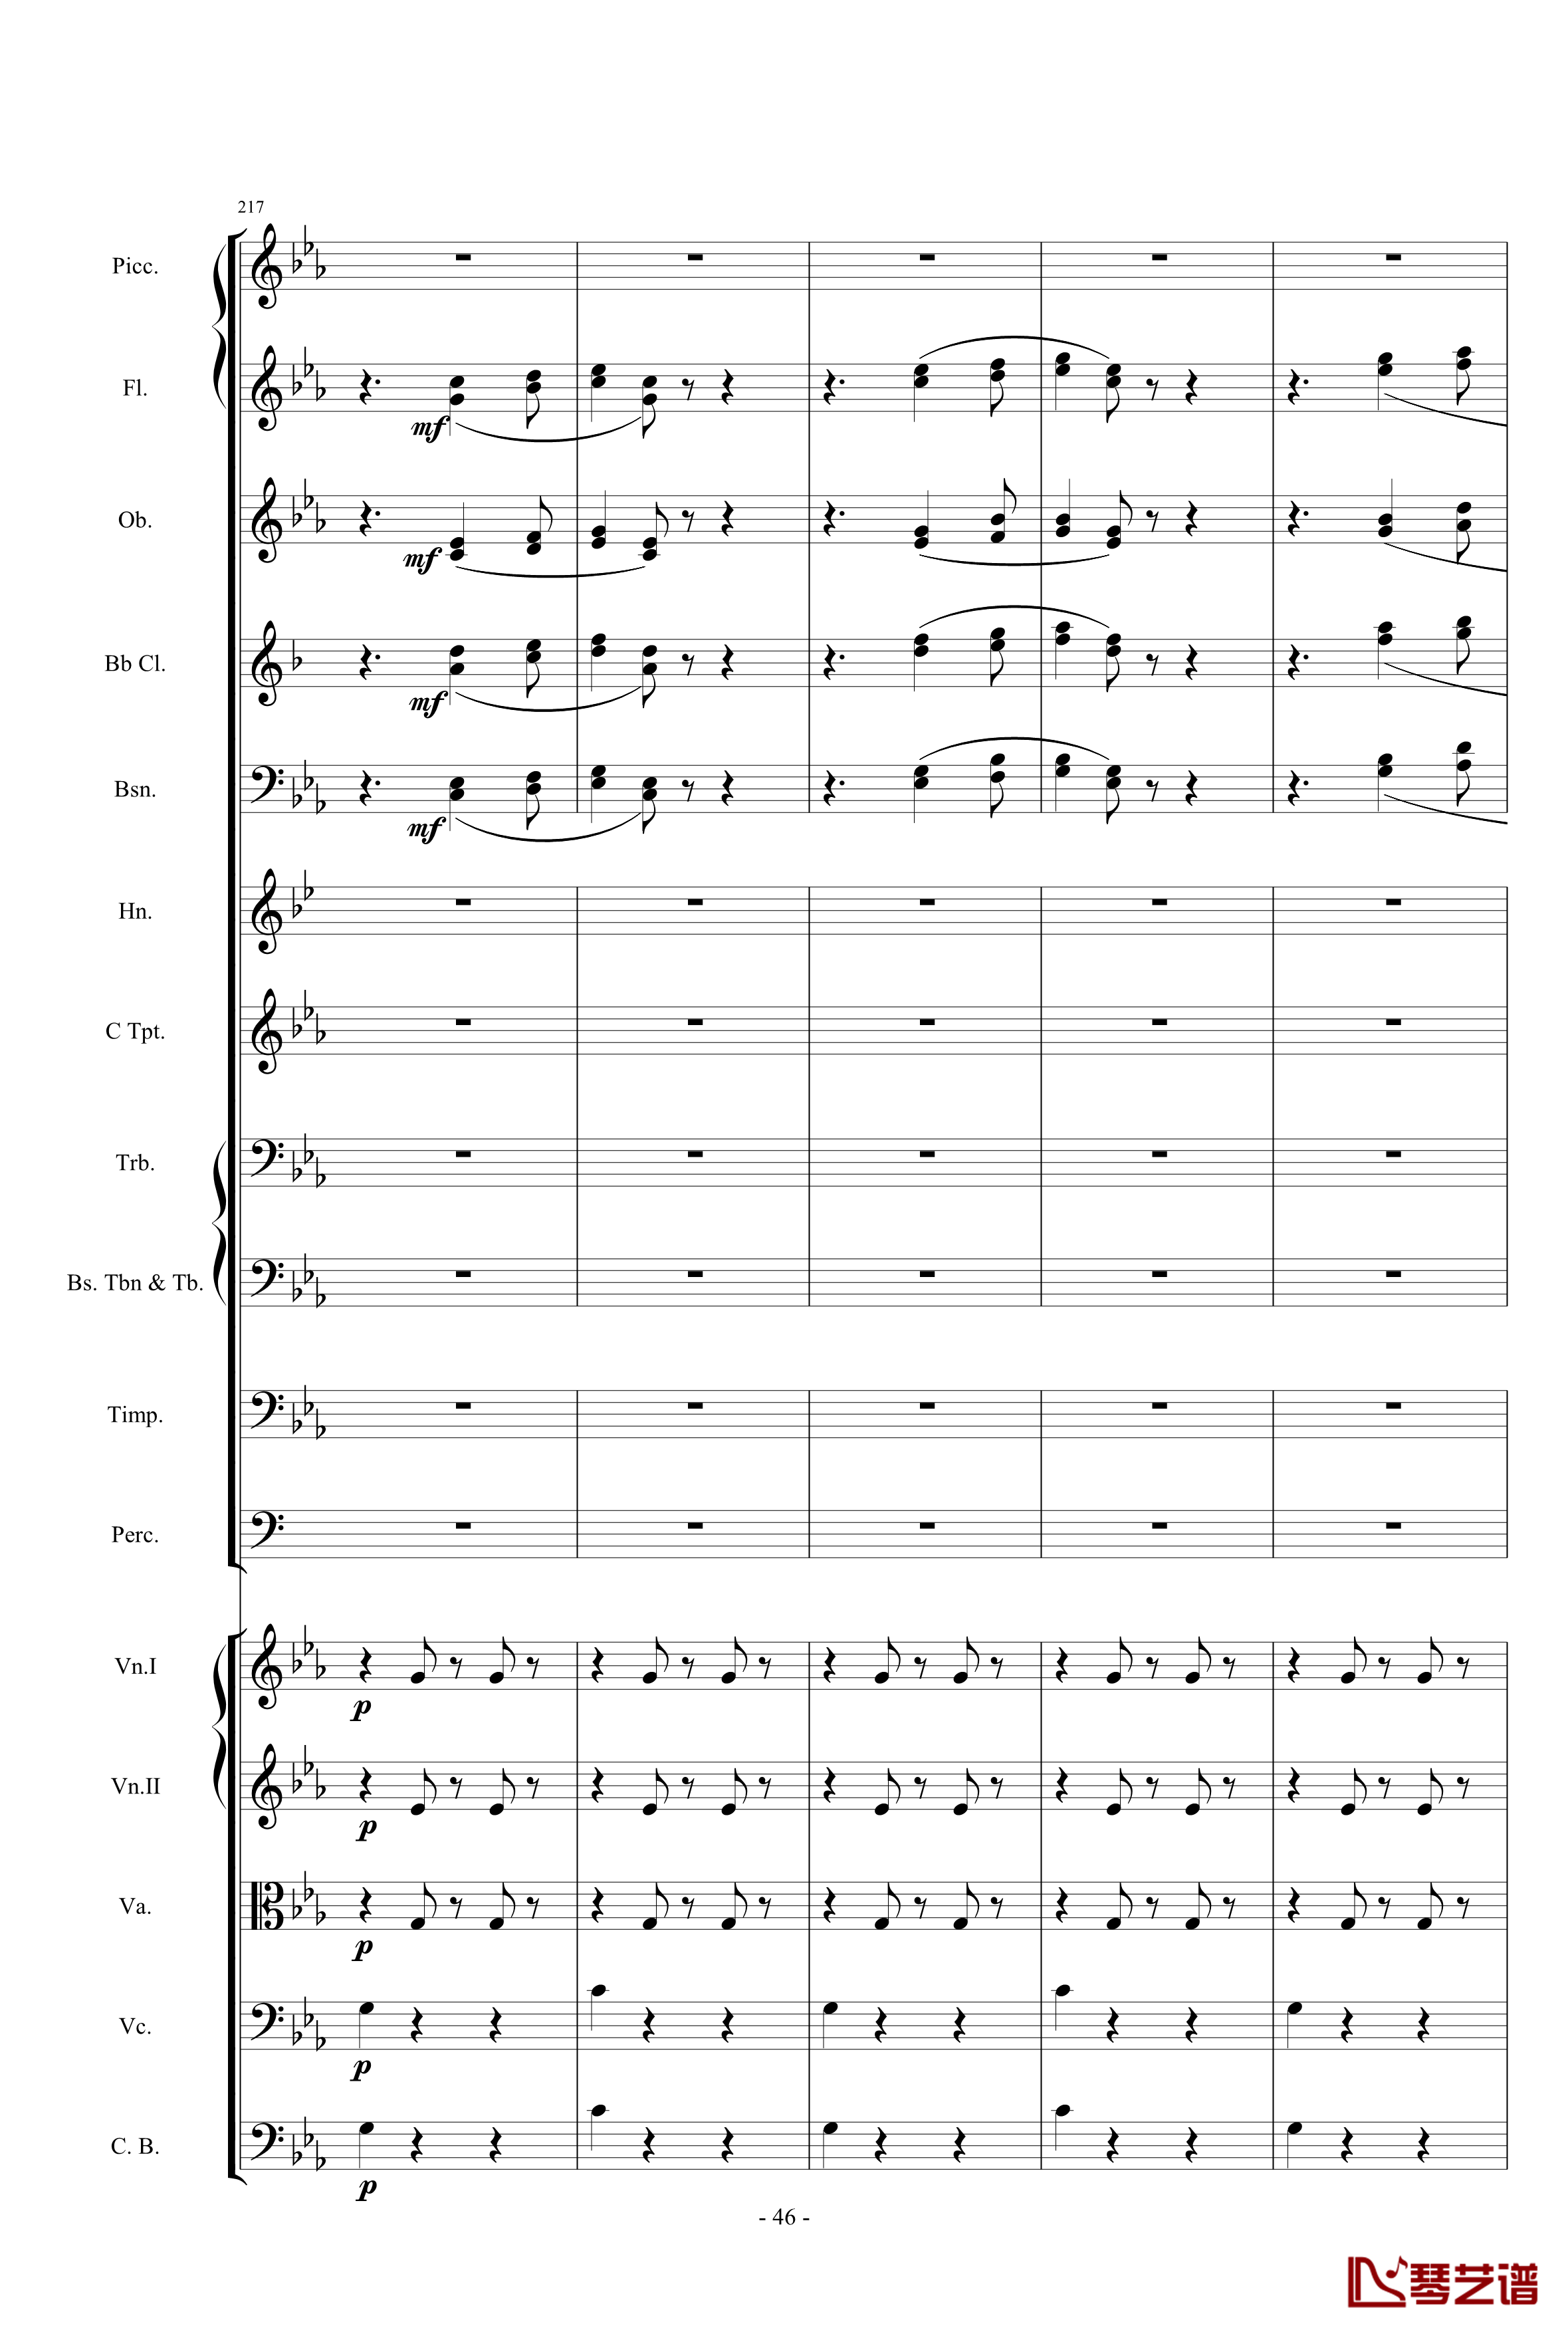 愤怒的小鸟交响曲第三乐章Op.5 no.3钢琴谱-1057257846